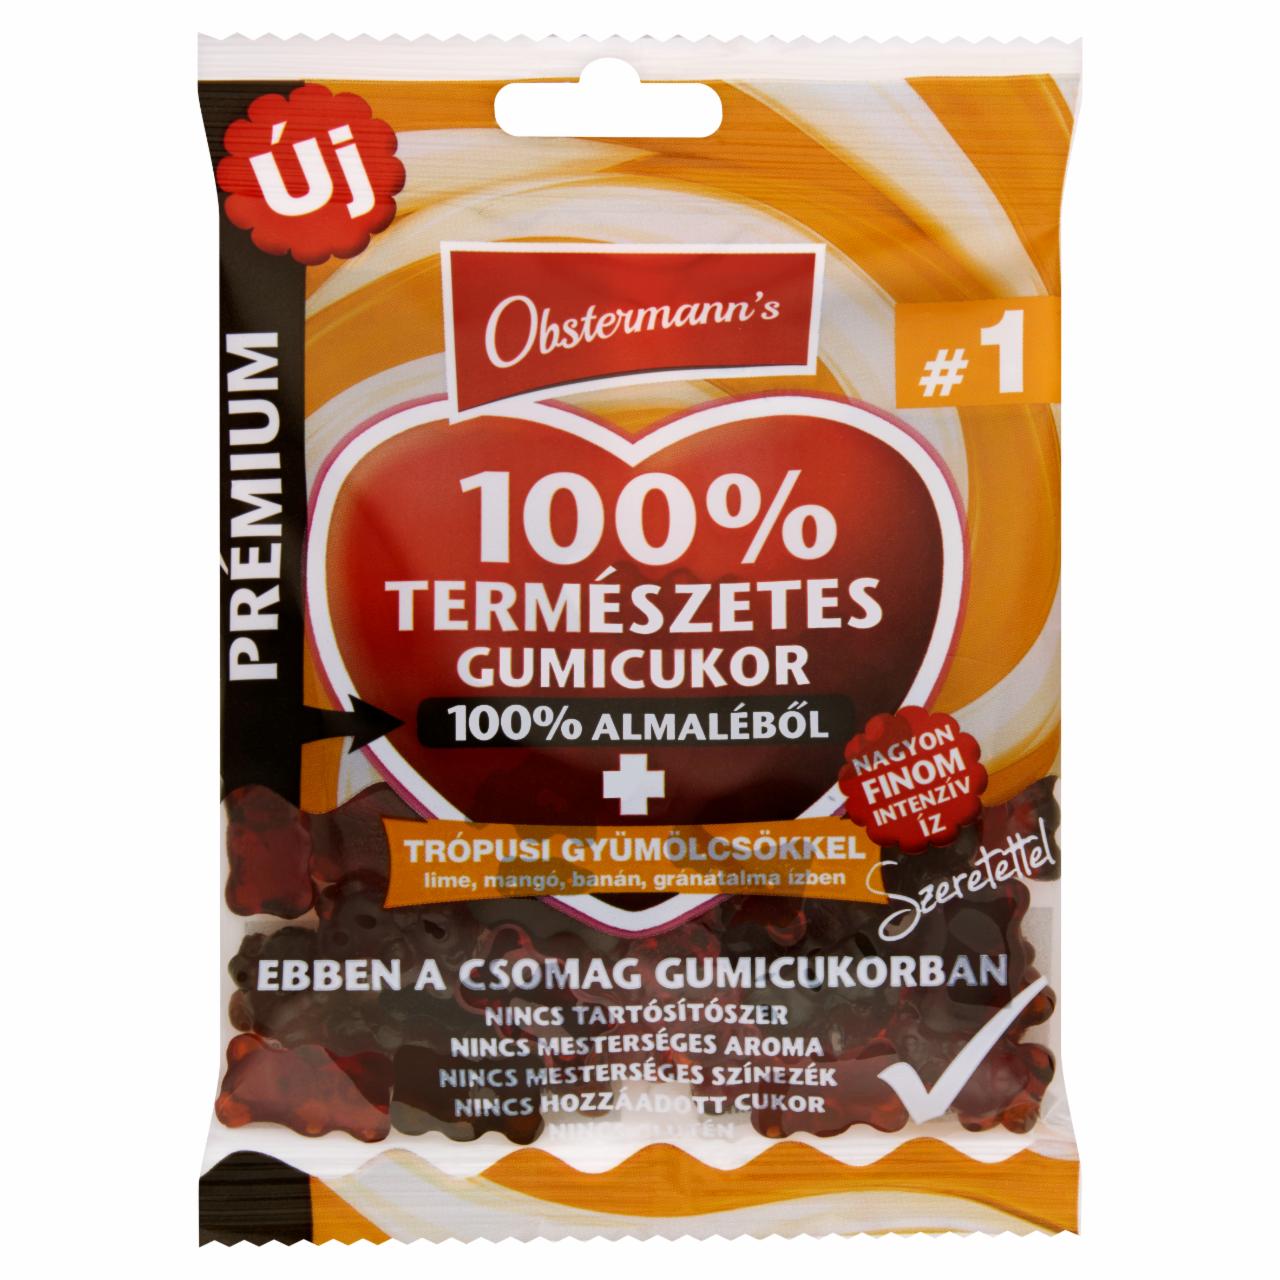 Képek - Obstermann's Prémium 100% természetes gumicukor trópusi gyümölcsökkel 80 g